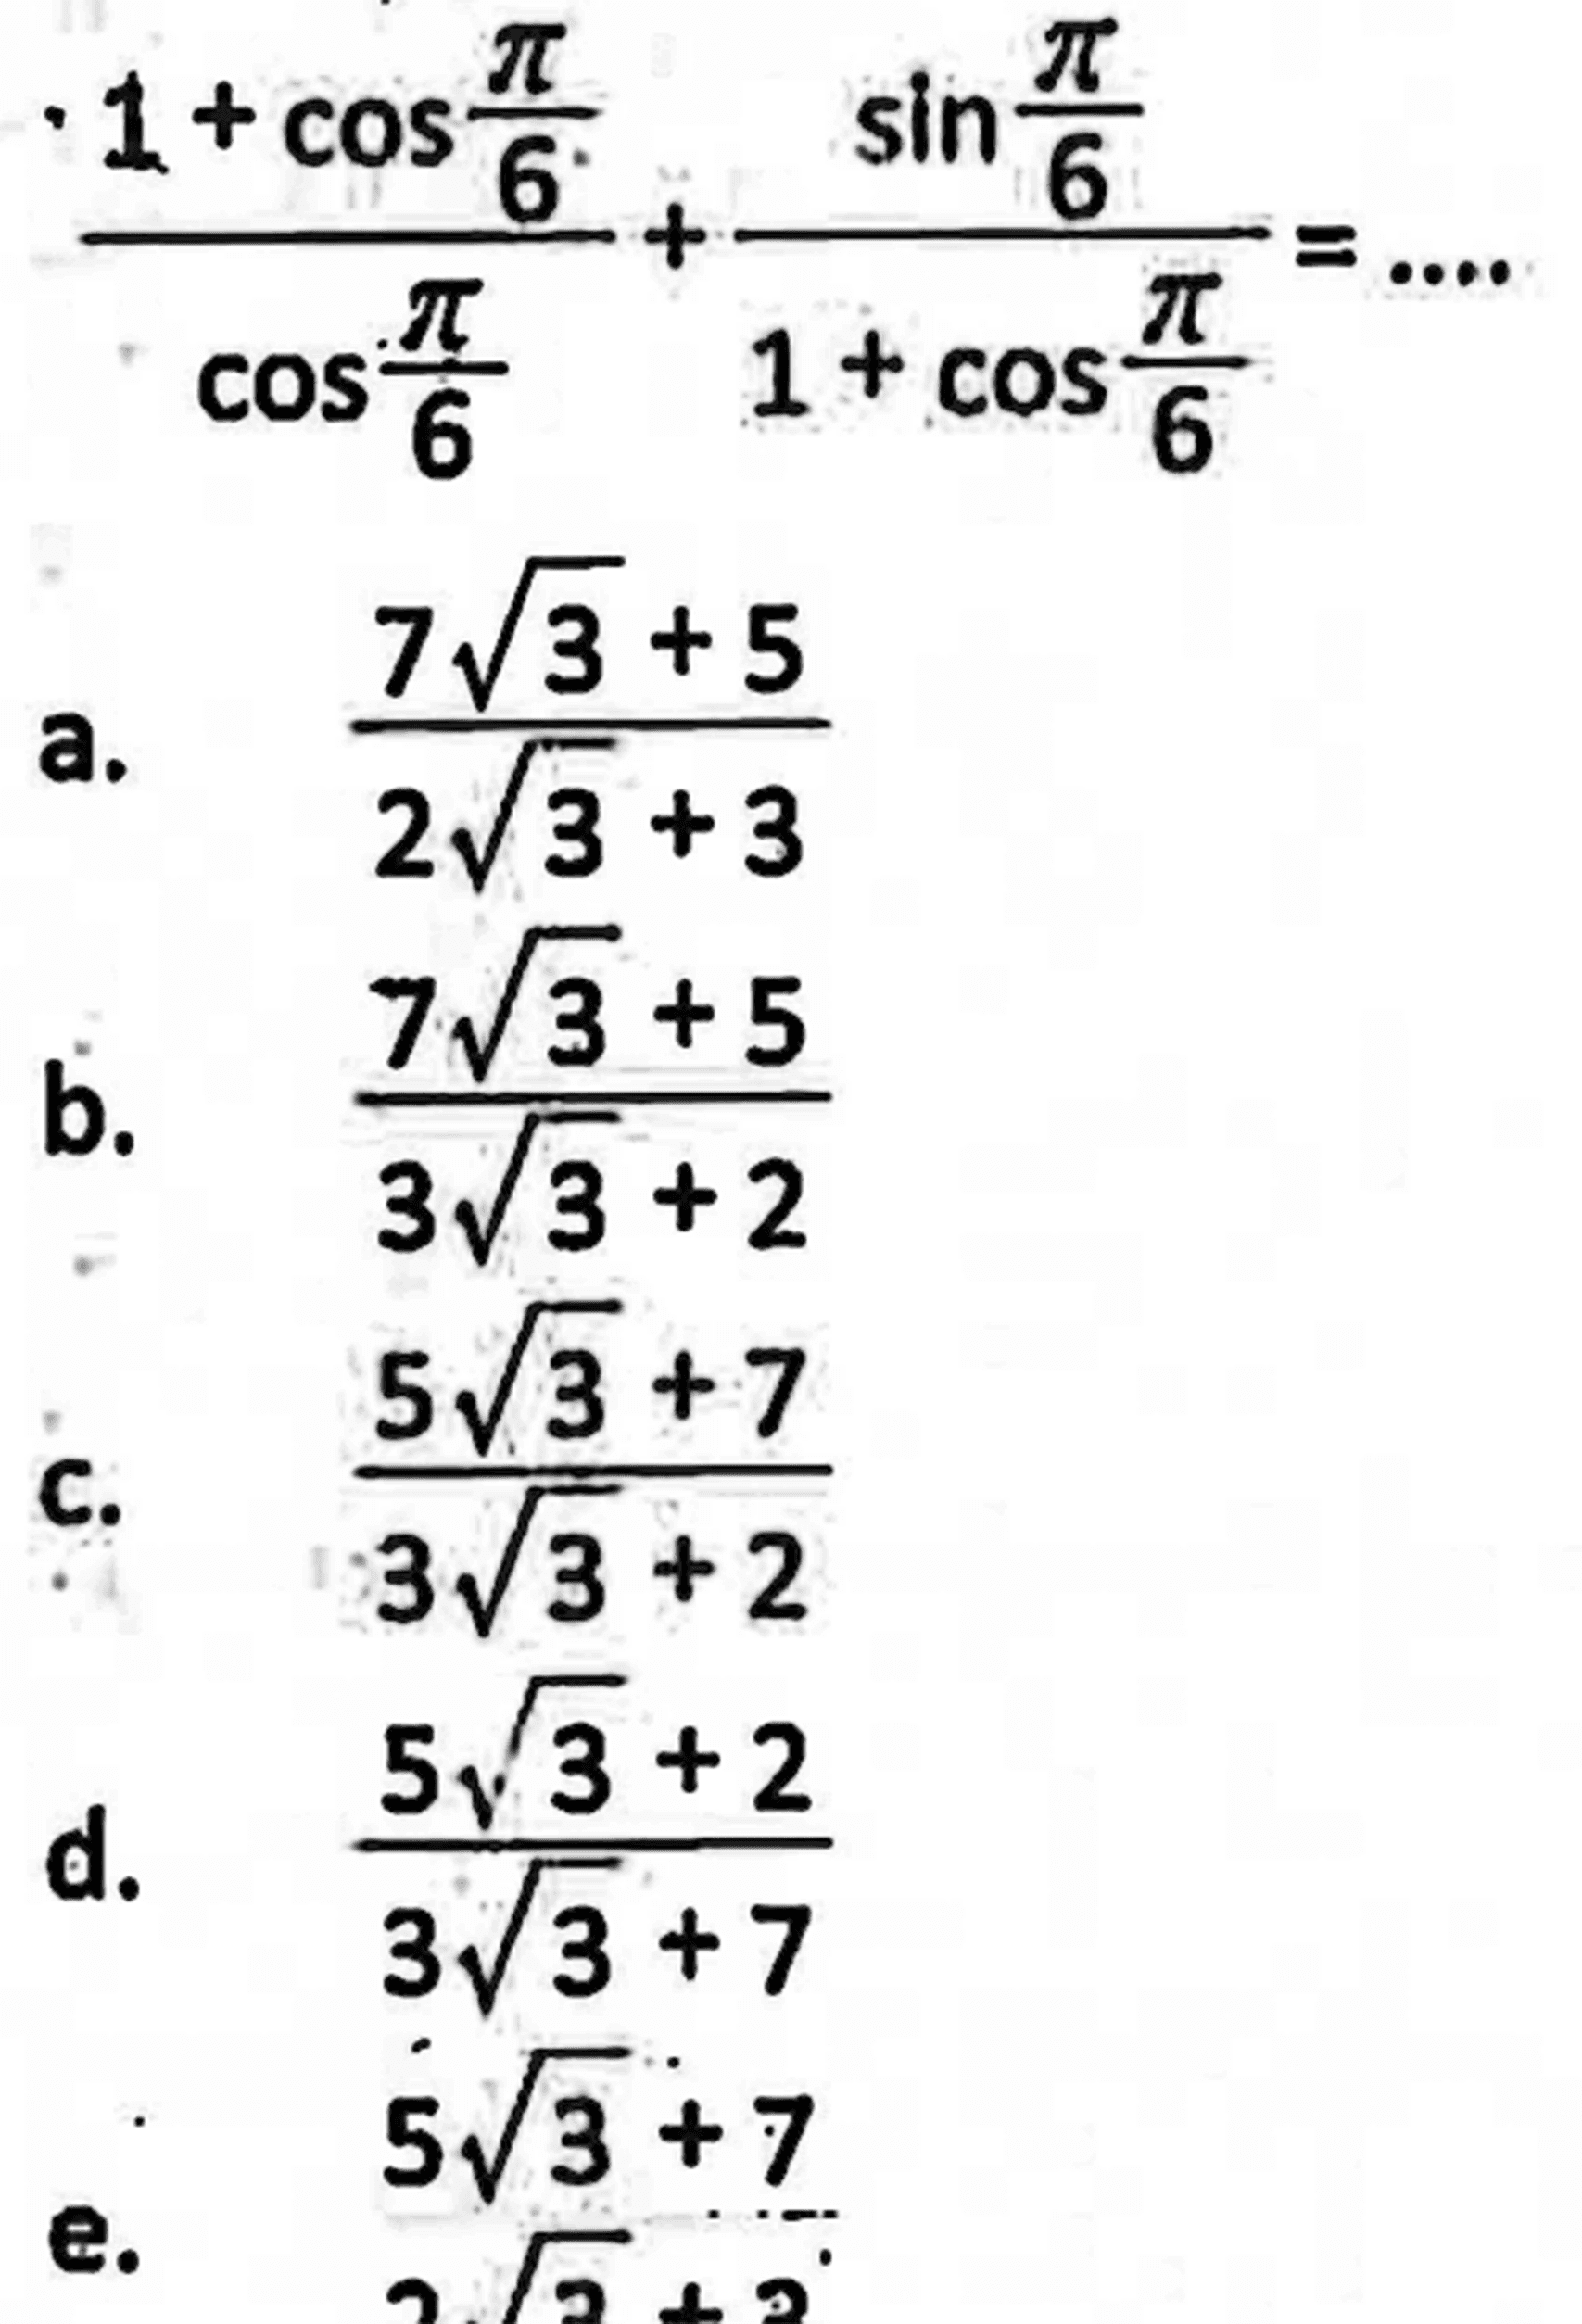 (1+cos pi/6)/(cos pi/6)+(sin pi/6)/(1+cos pi/6)=... 